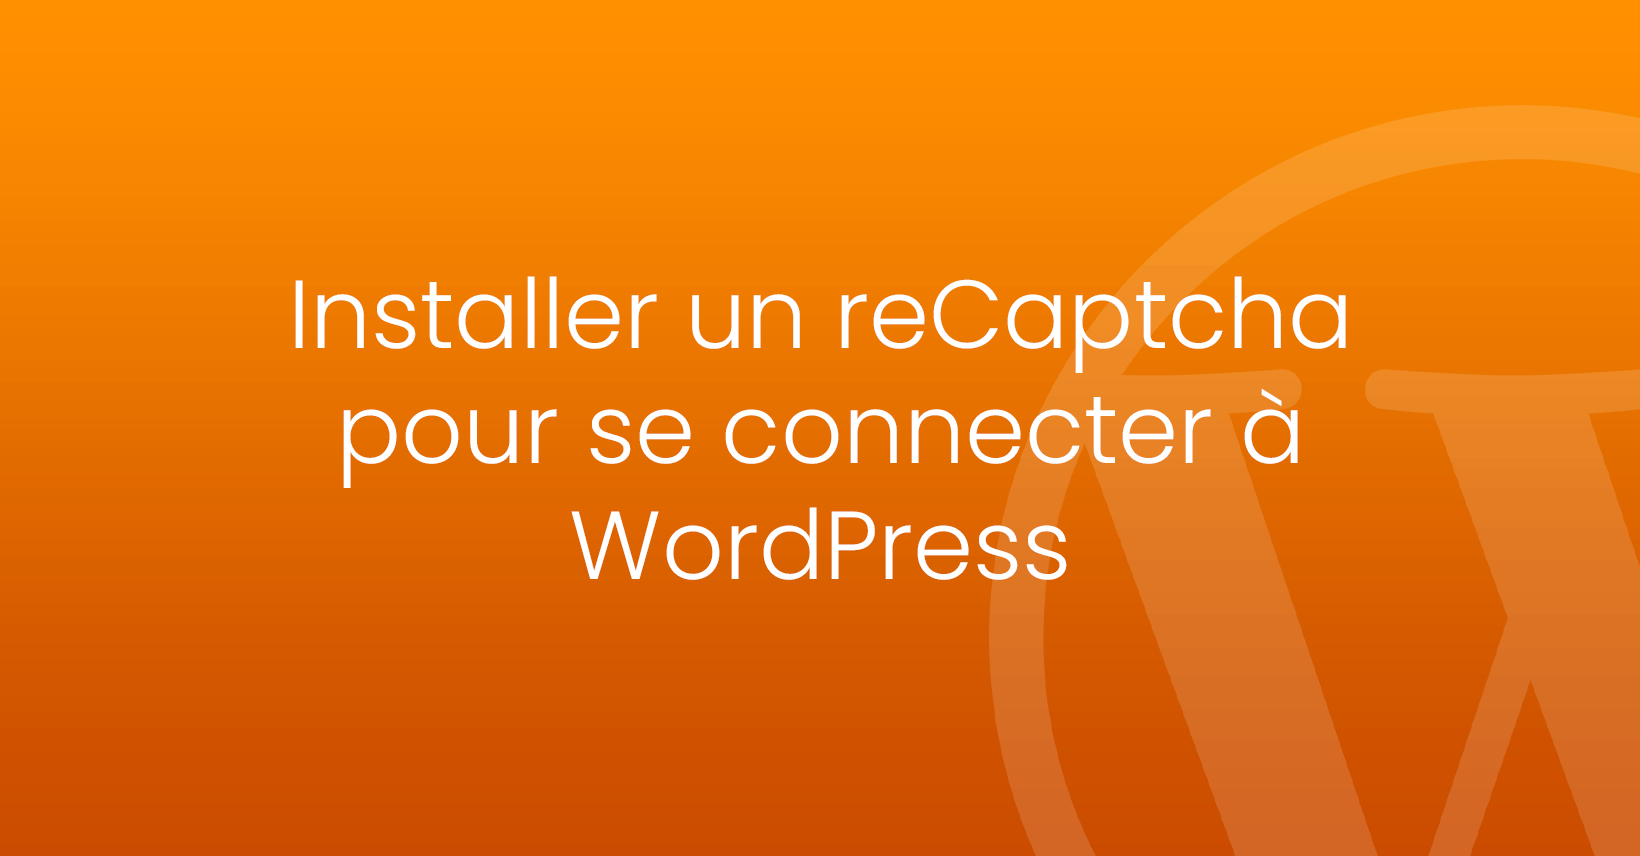 Installer un reCaptcha pour se connecter à WordPress : pourquoi et comment ?